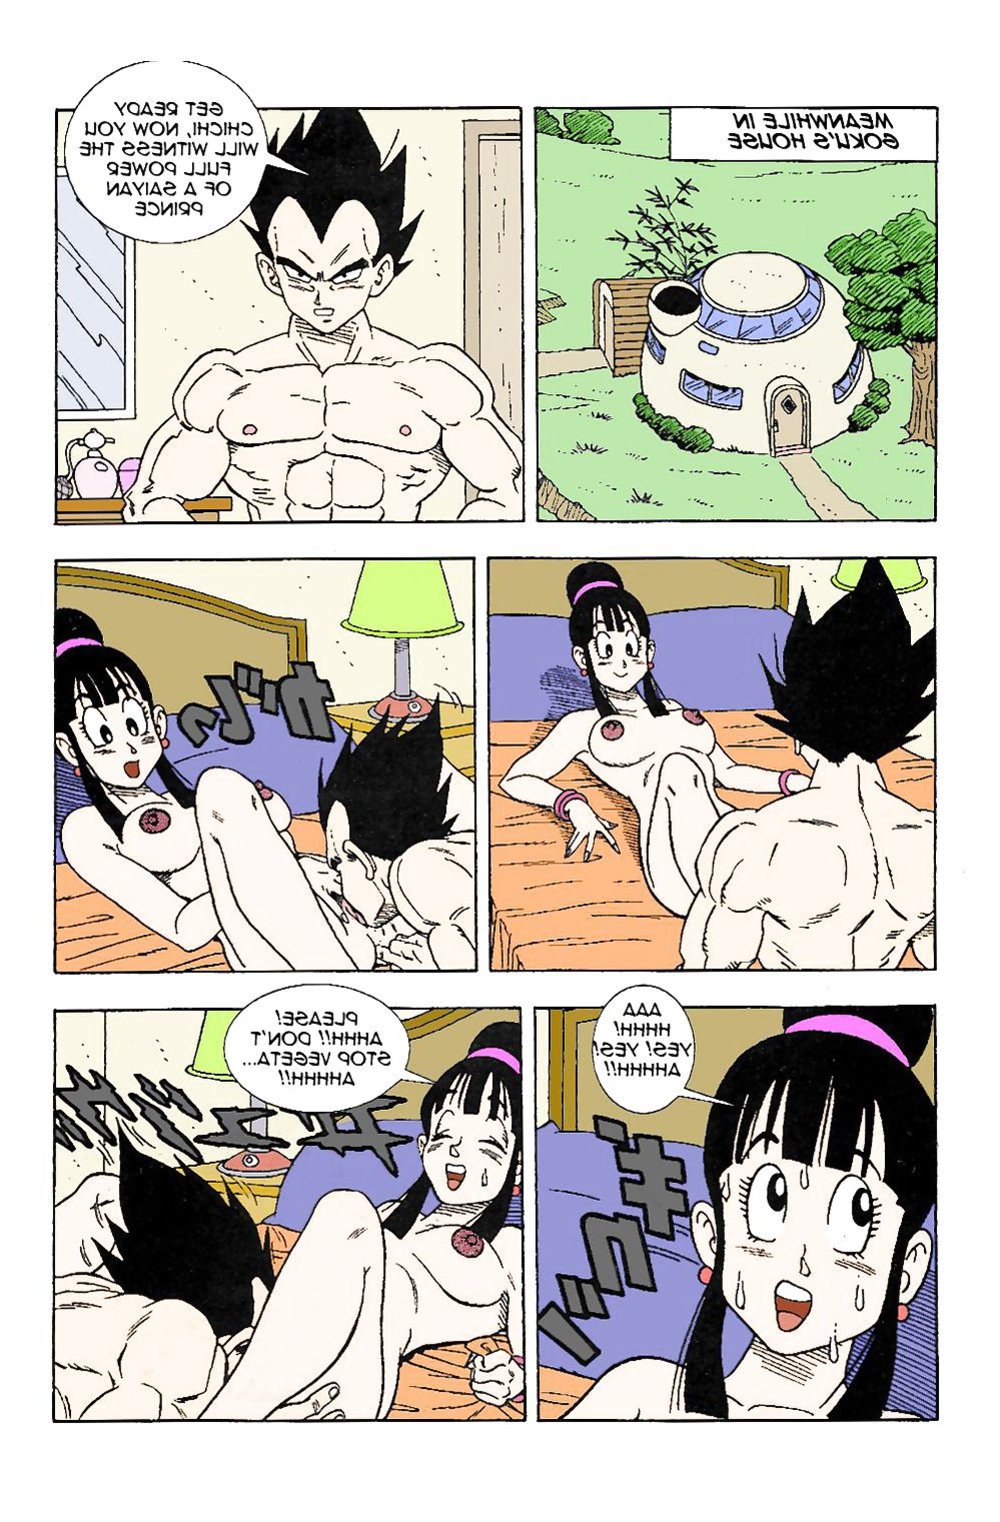 Dbz Vegeta Porks Gokus Wifey Chichi Zb Porn 9825